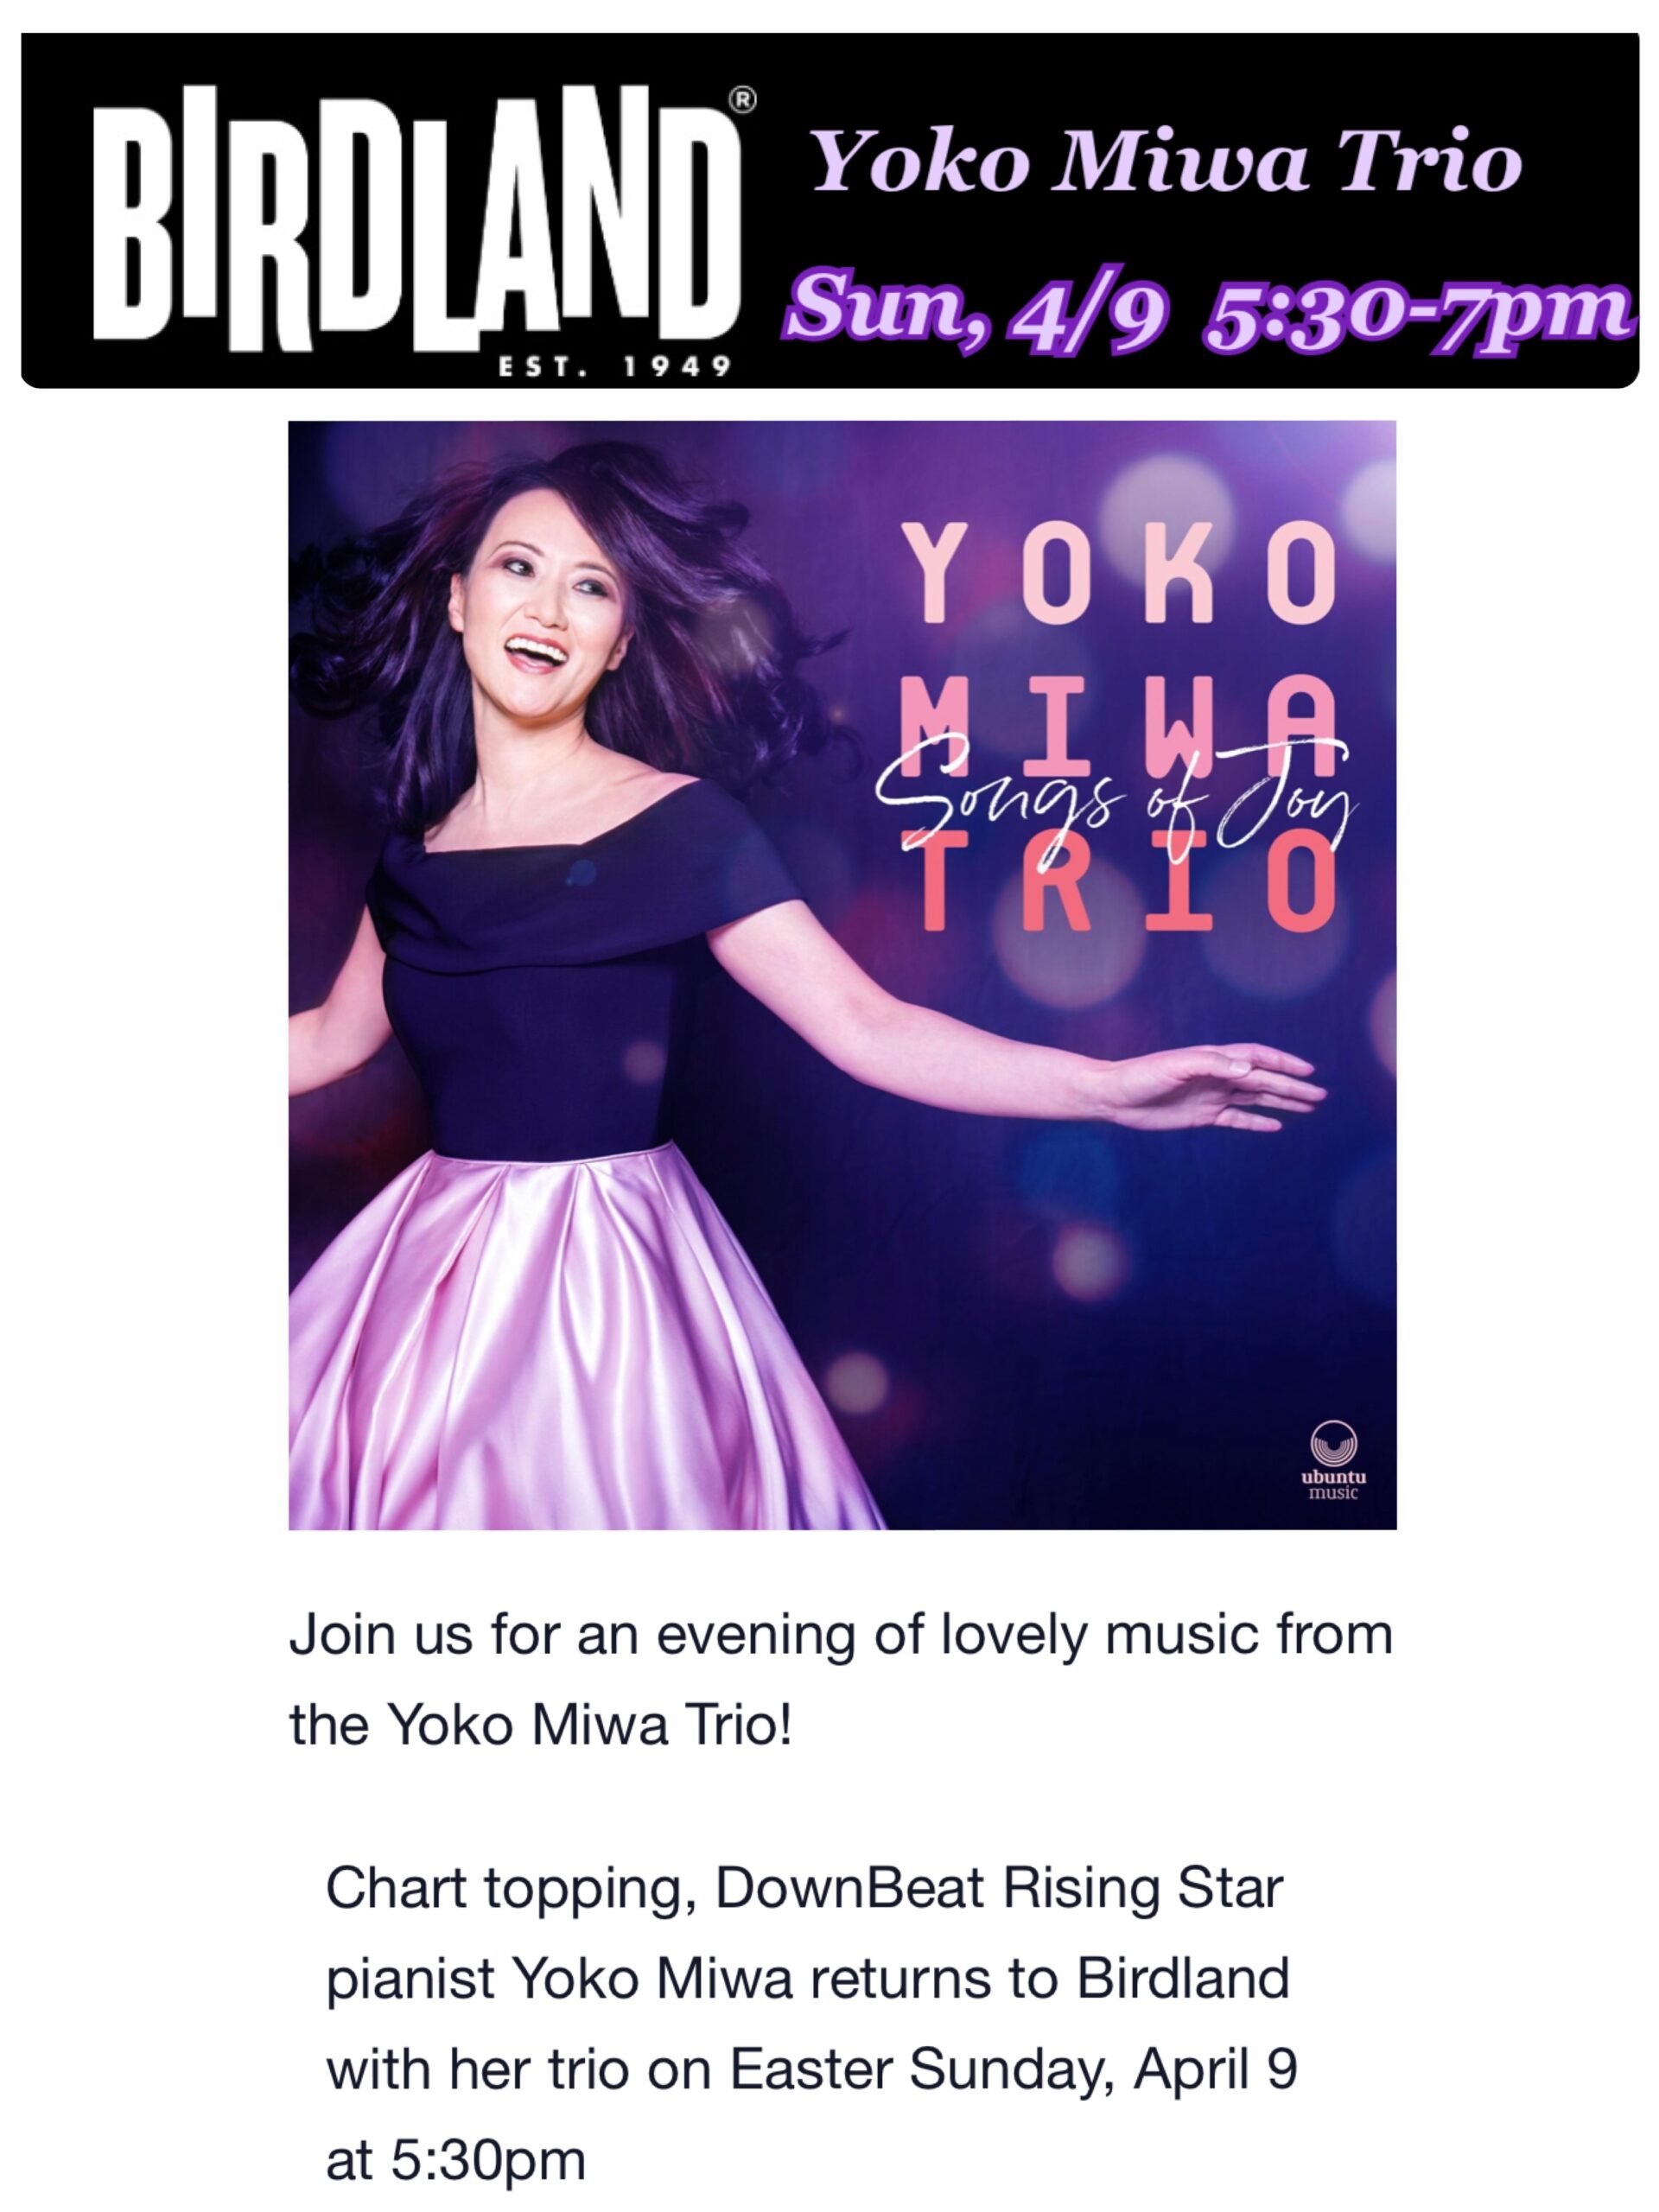 Yoko Miwa Trio at Birdland Jazz Club